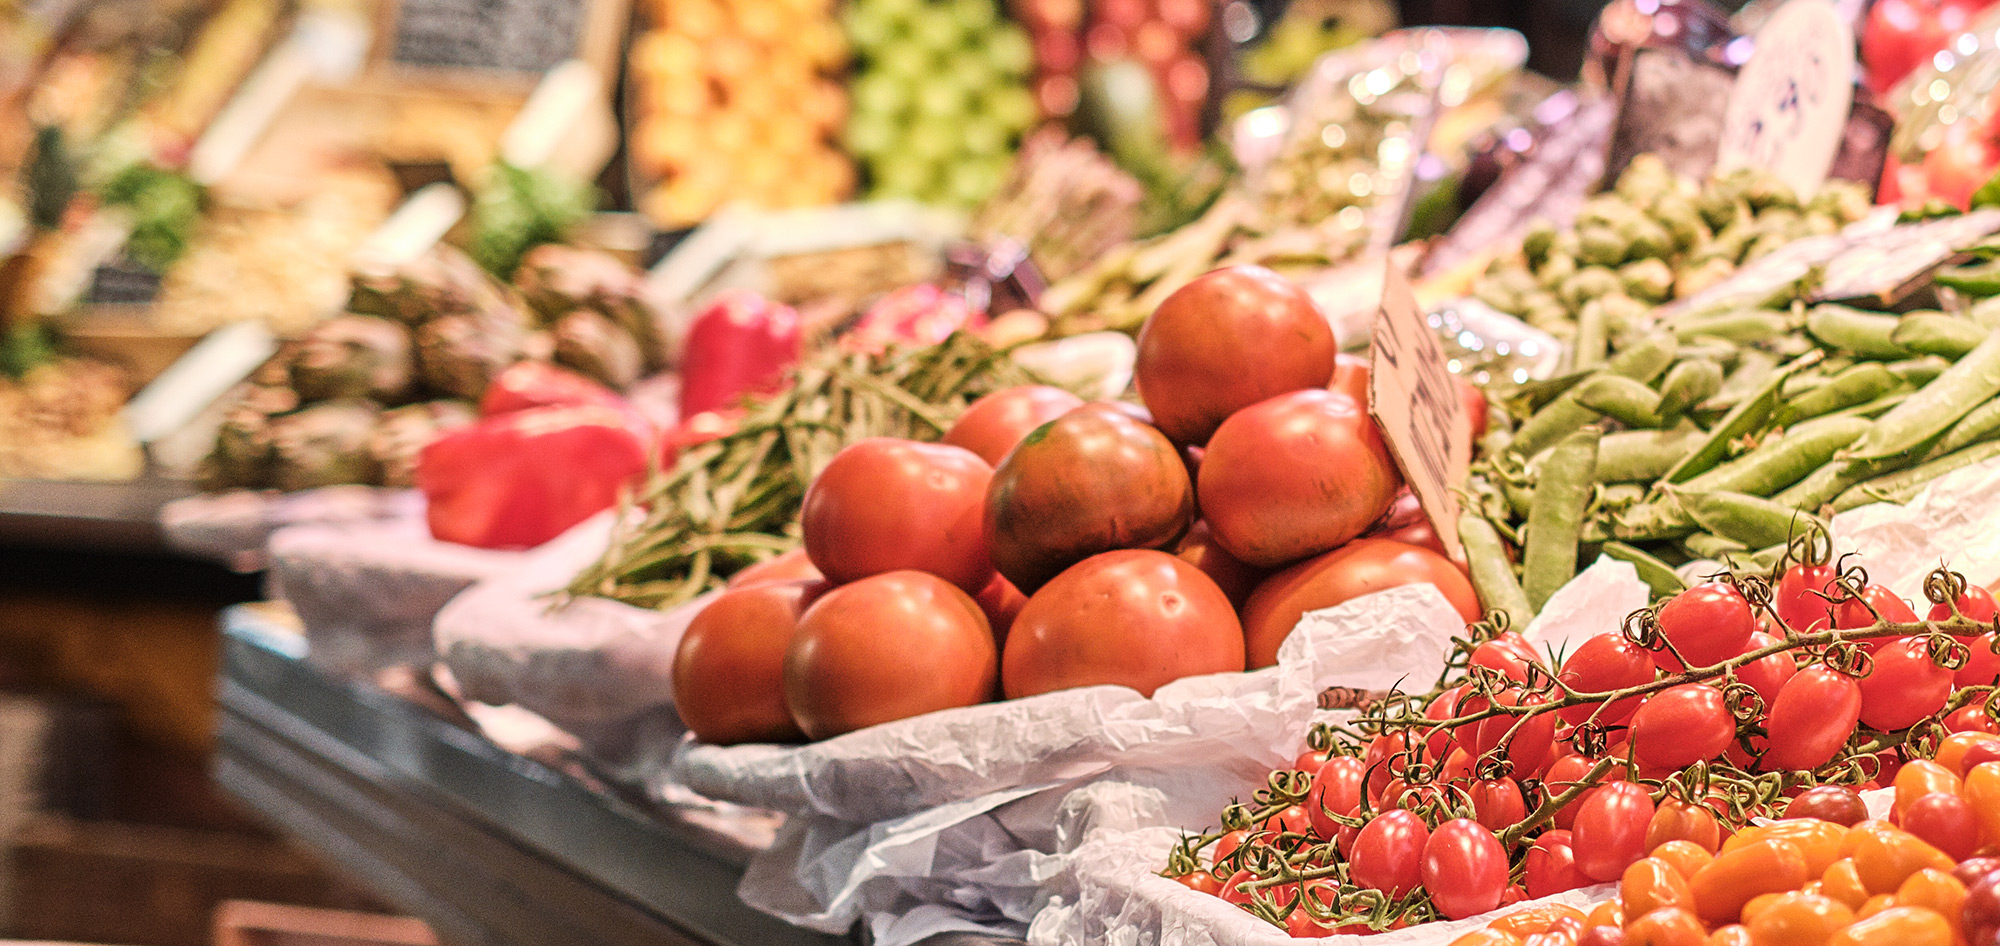 Bolsas compostables perfectas para la sección de alimentación de grandes superficies: frutas y verduras, productos a granel, etc.